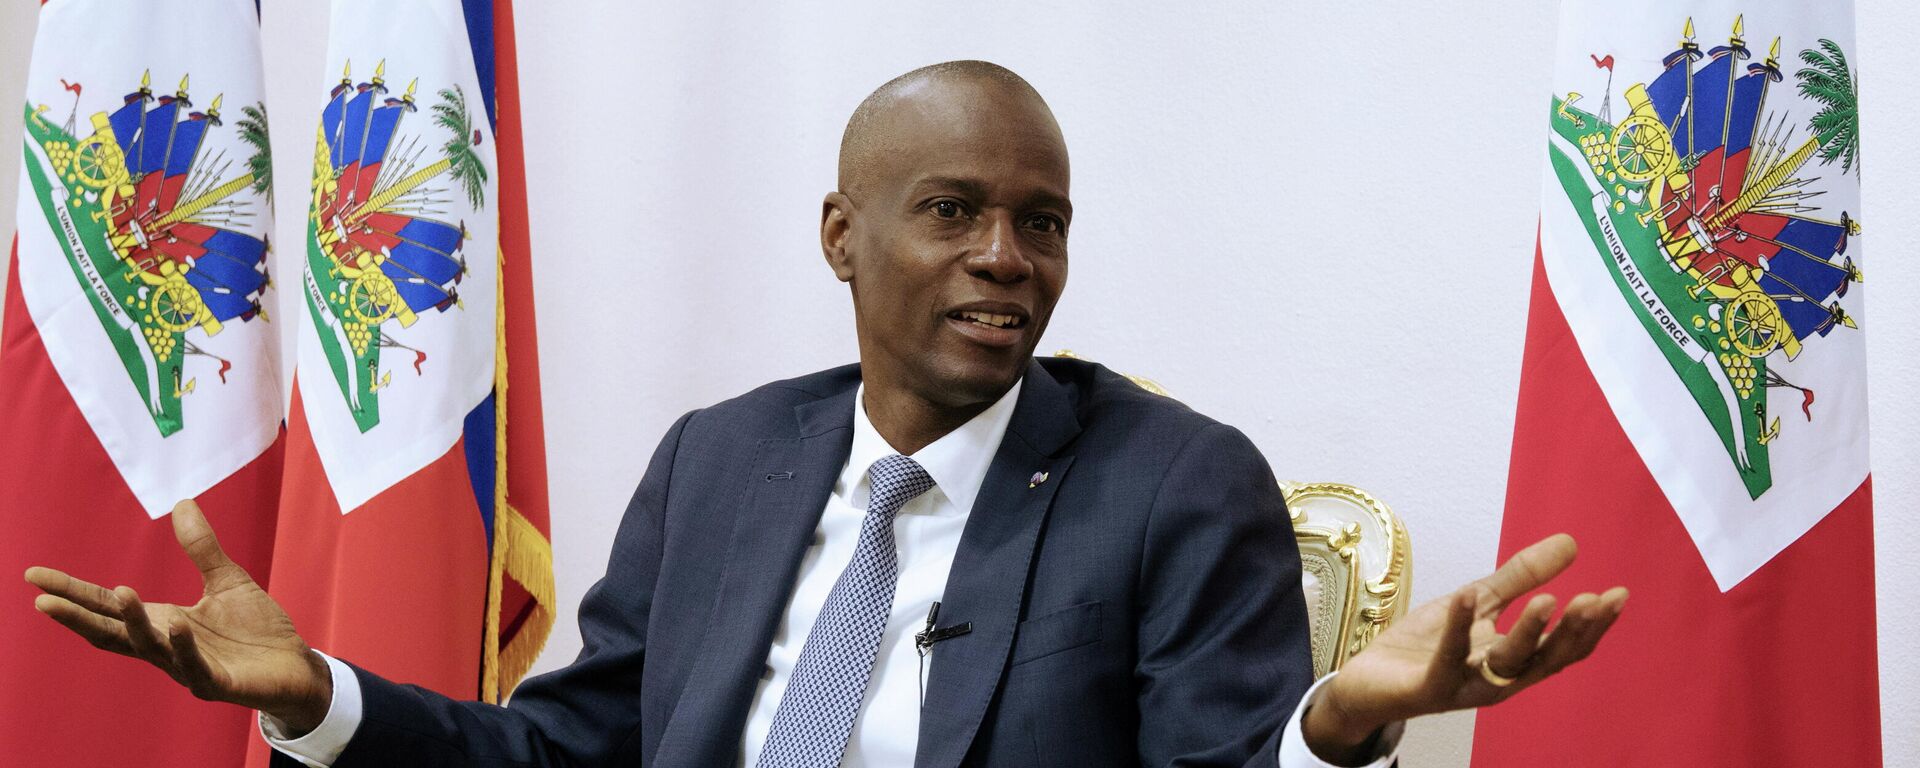 Jovenel Moise, expresidente de Haití - Sputnik Mundo, 1920, 16.07.2021